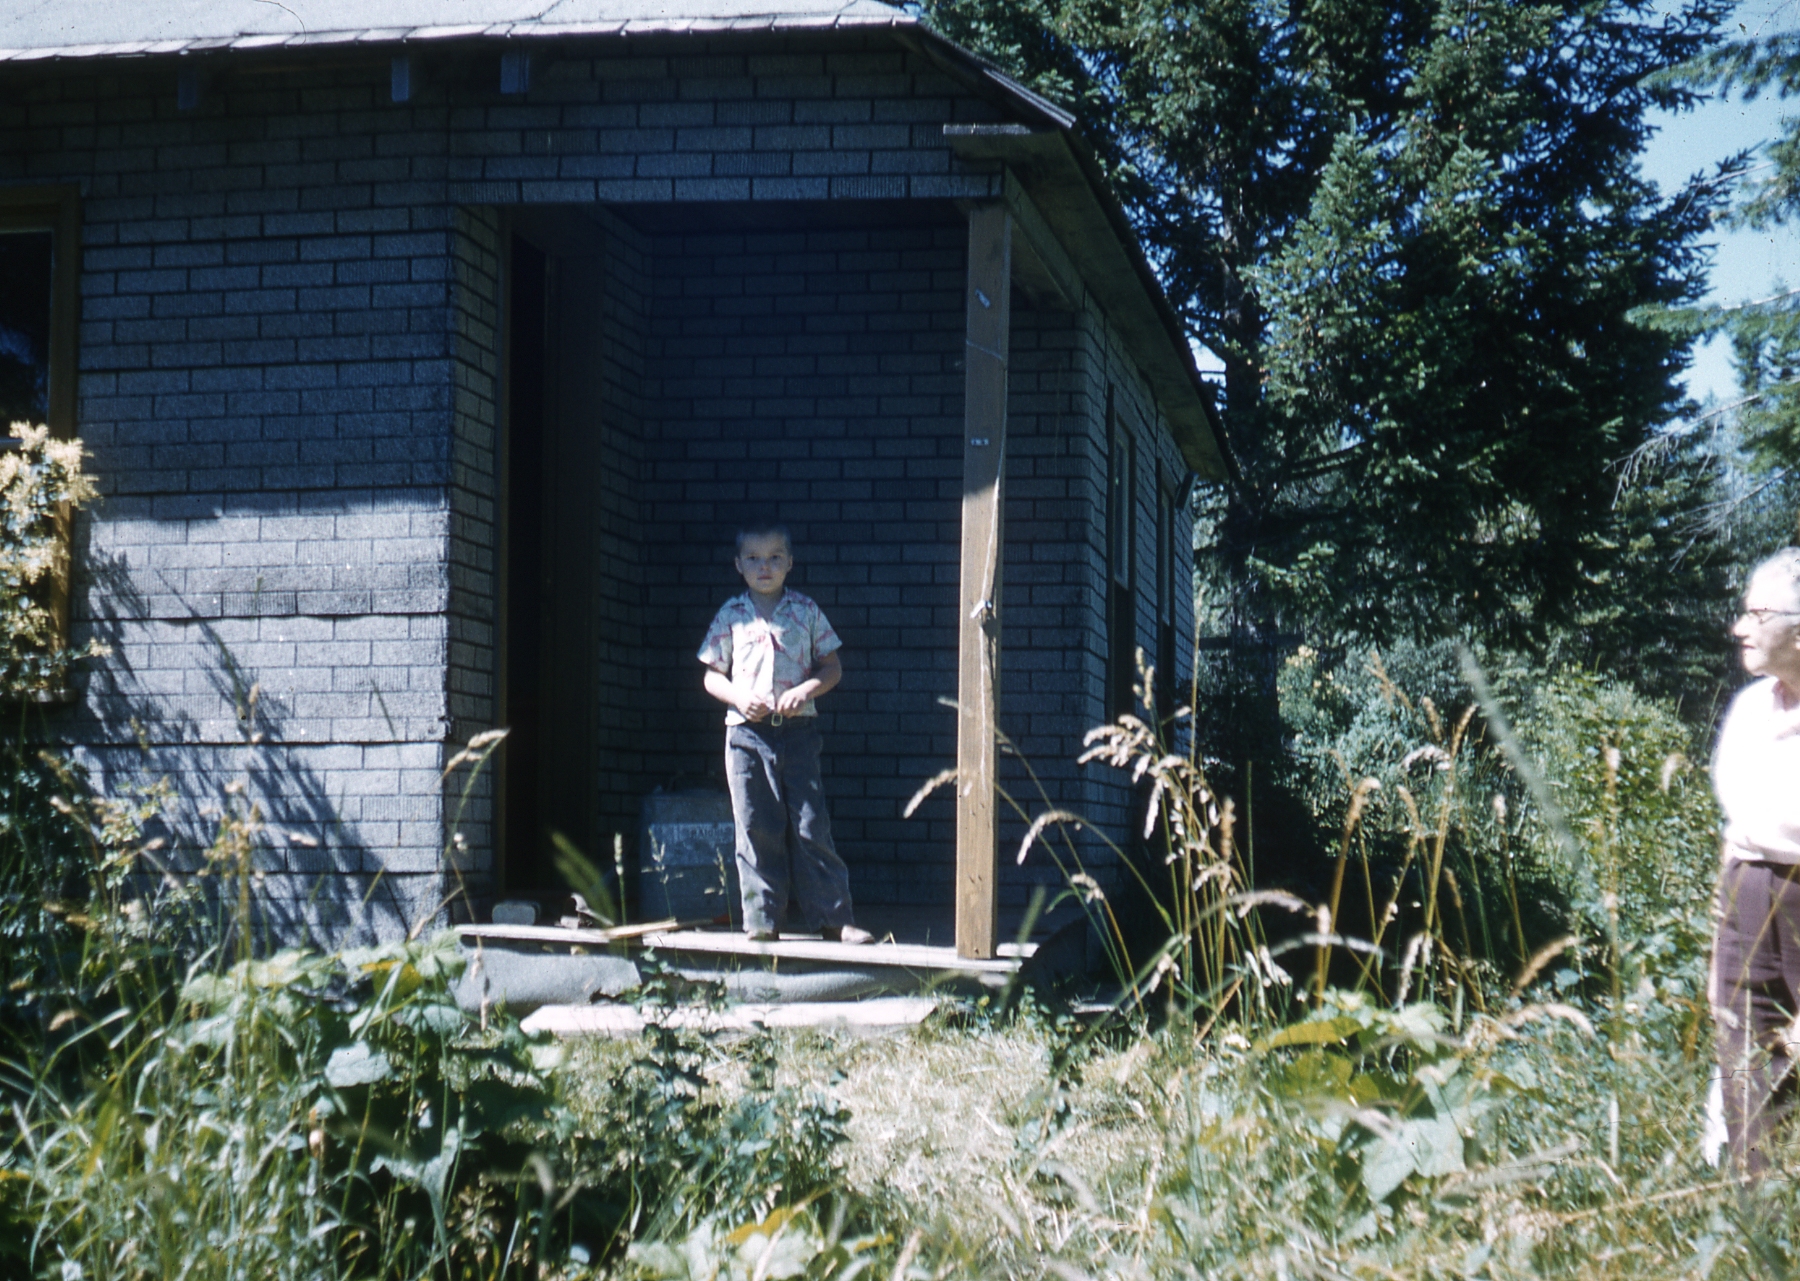 1958, 07: boy at cabin?